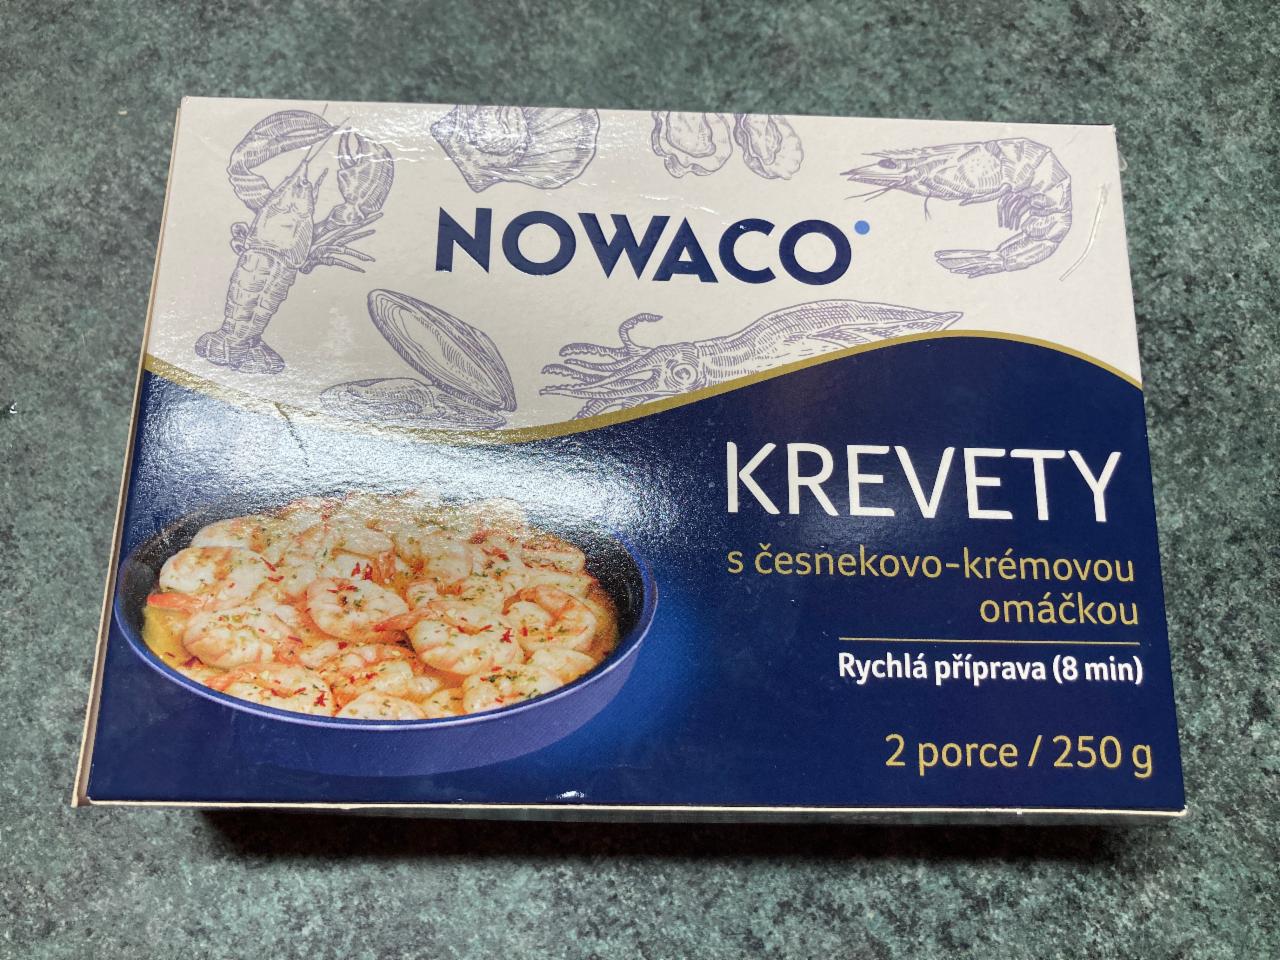 Fotografie - Krevety s česnekovo-krémovou omáčkou Nowaco